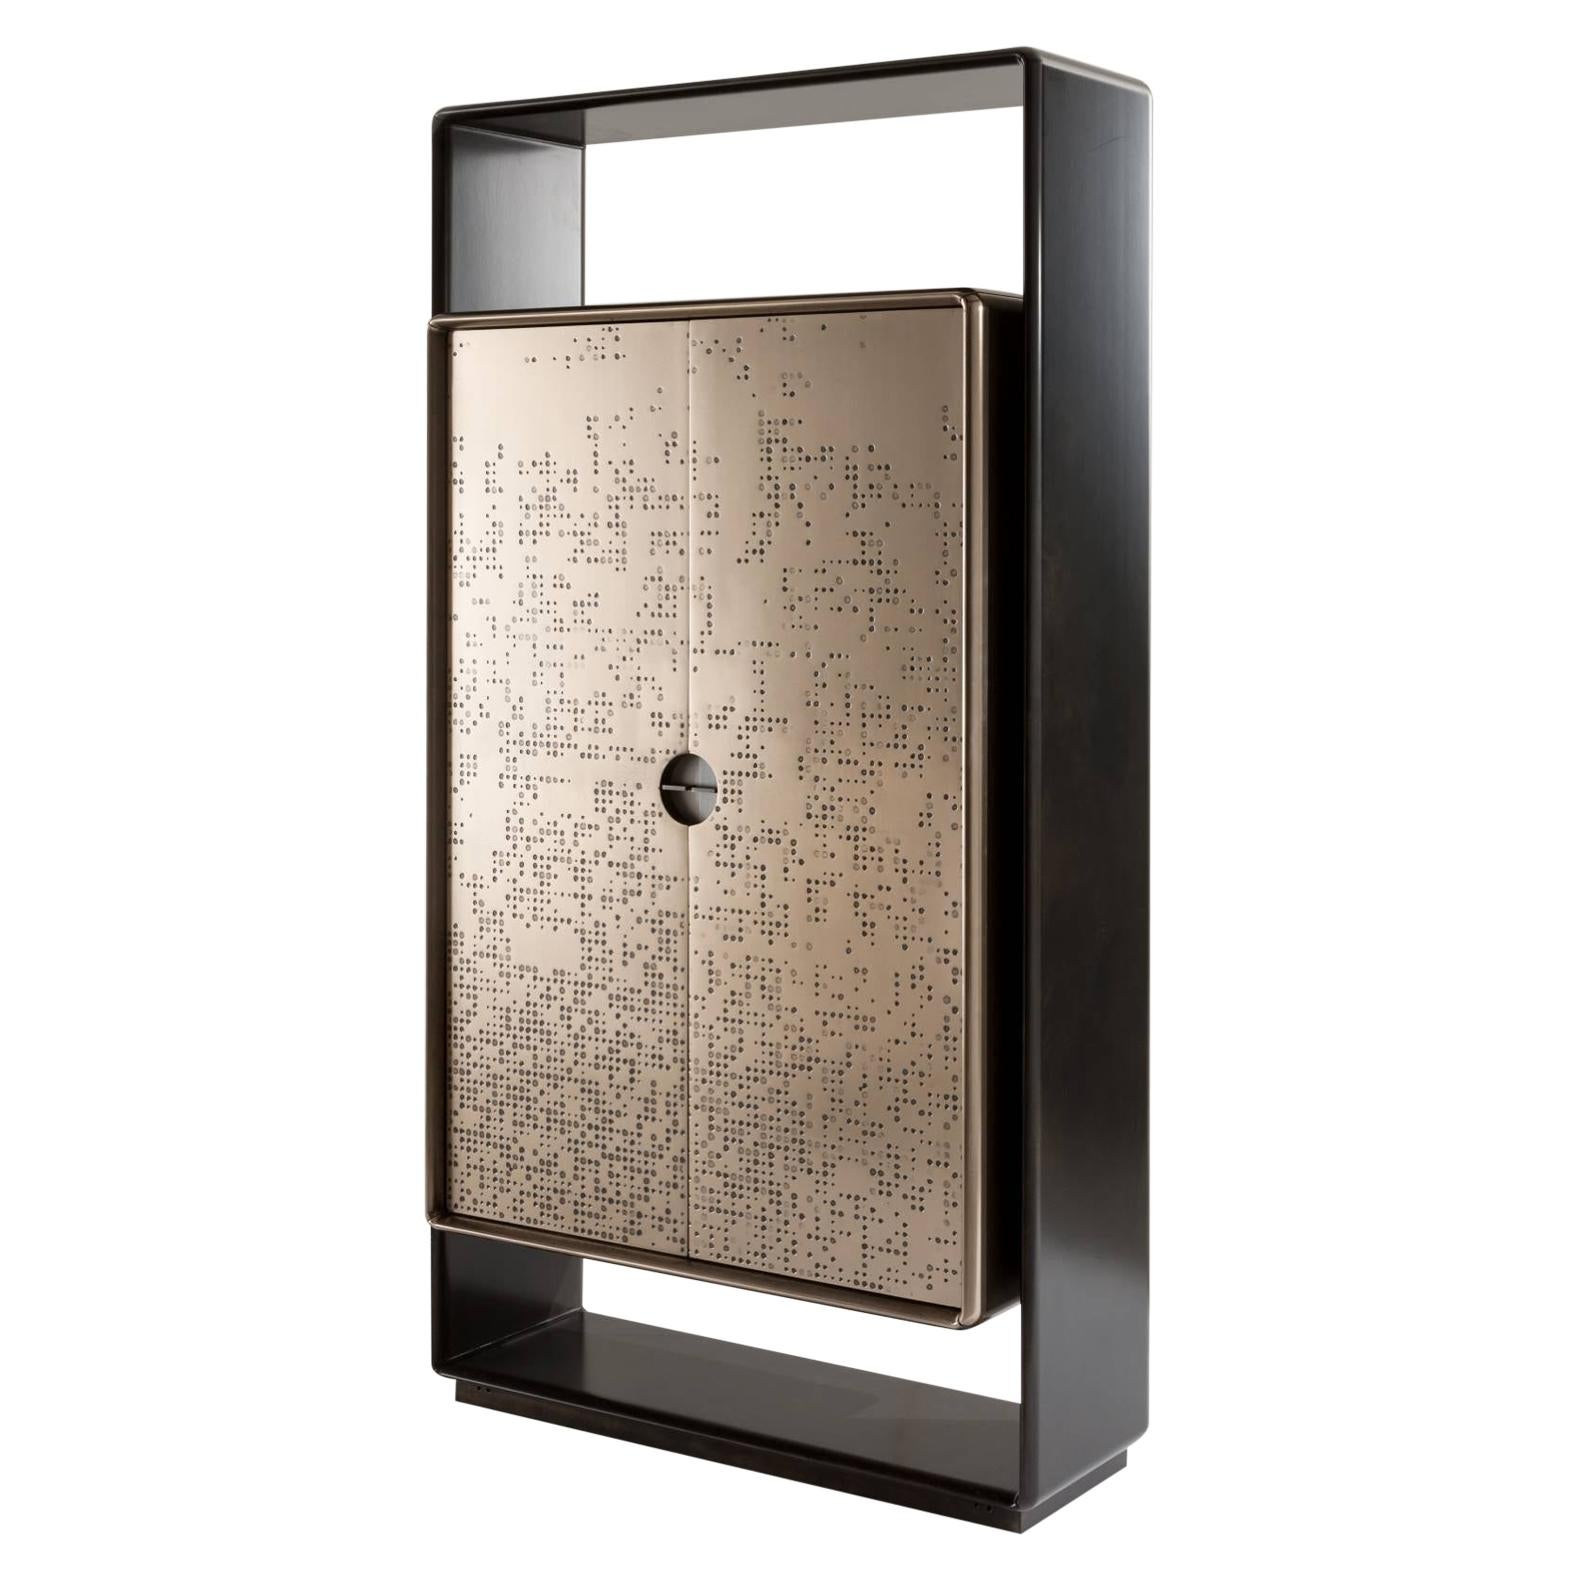 Laurameroni "Talento Unlimited" Modern Tall Cabinet in Bronze Liquid Metal